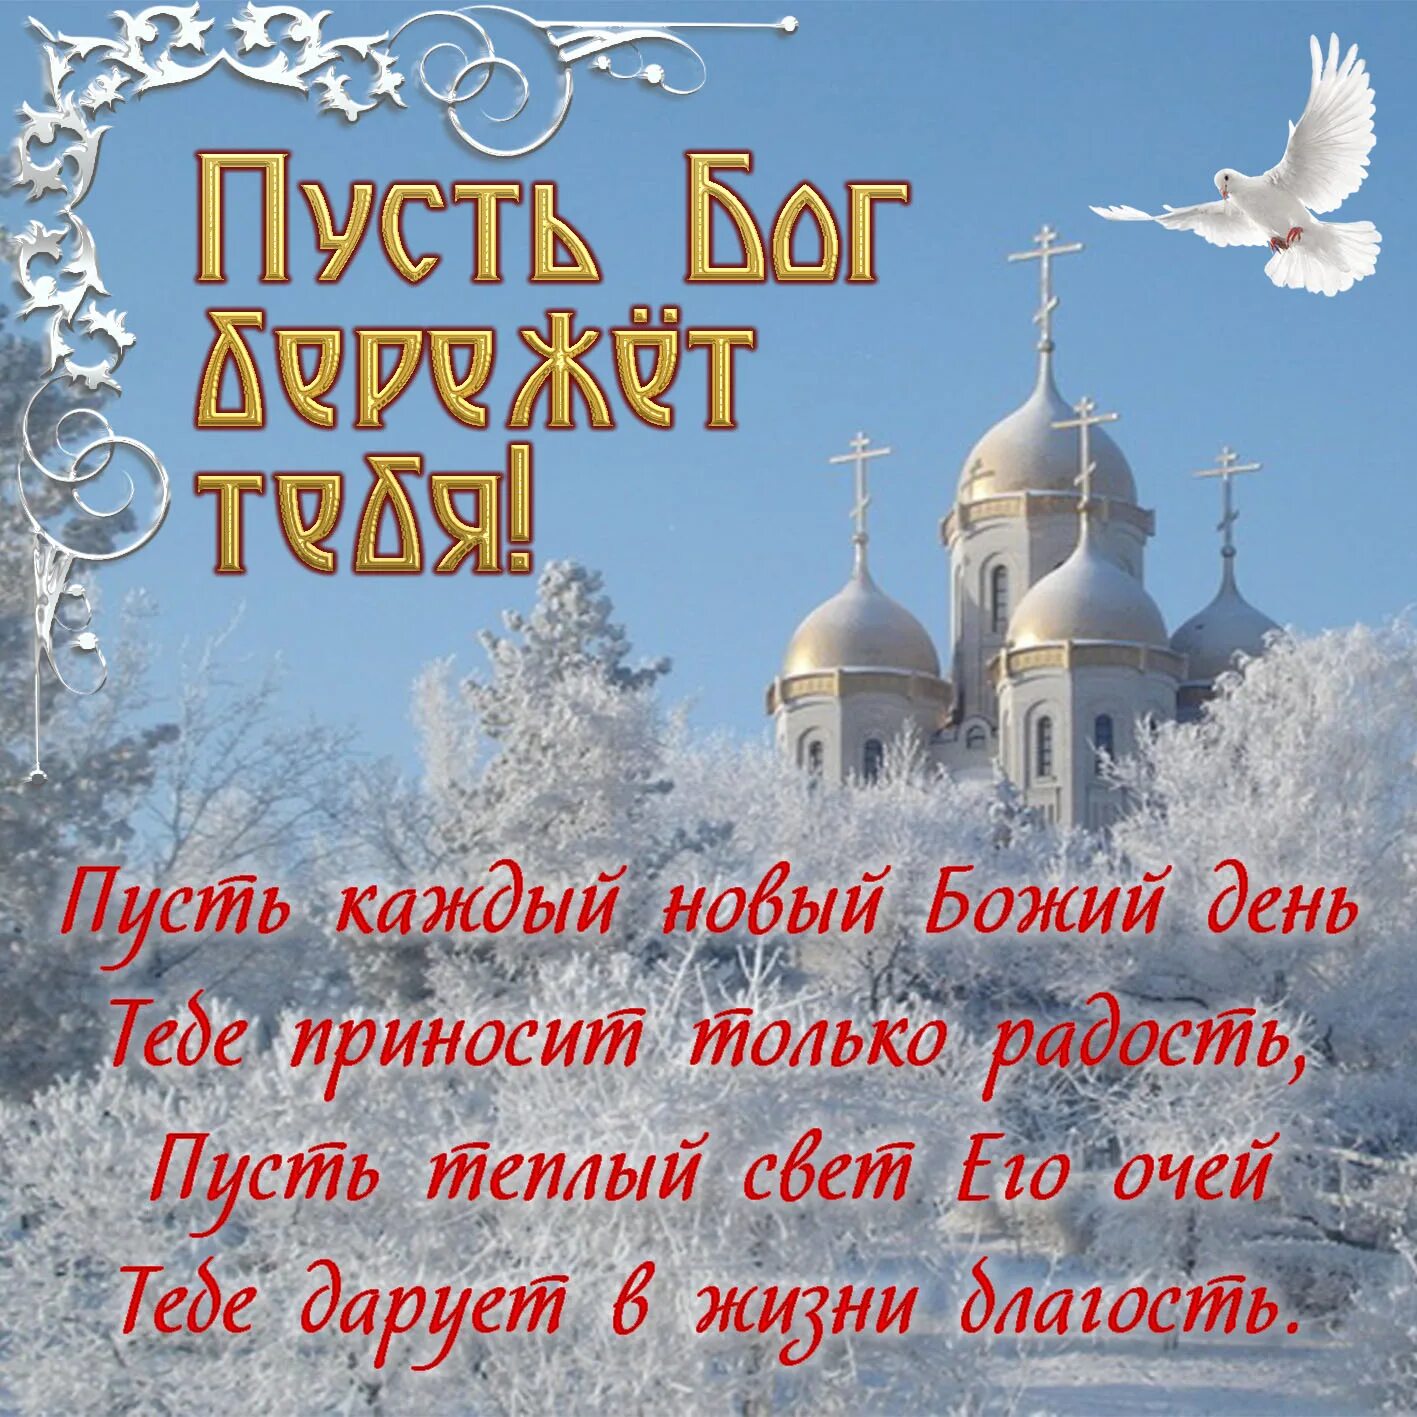 Православные картинки с поздравлениями дня